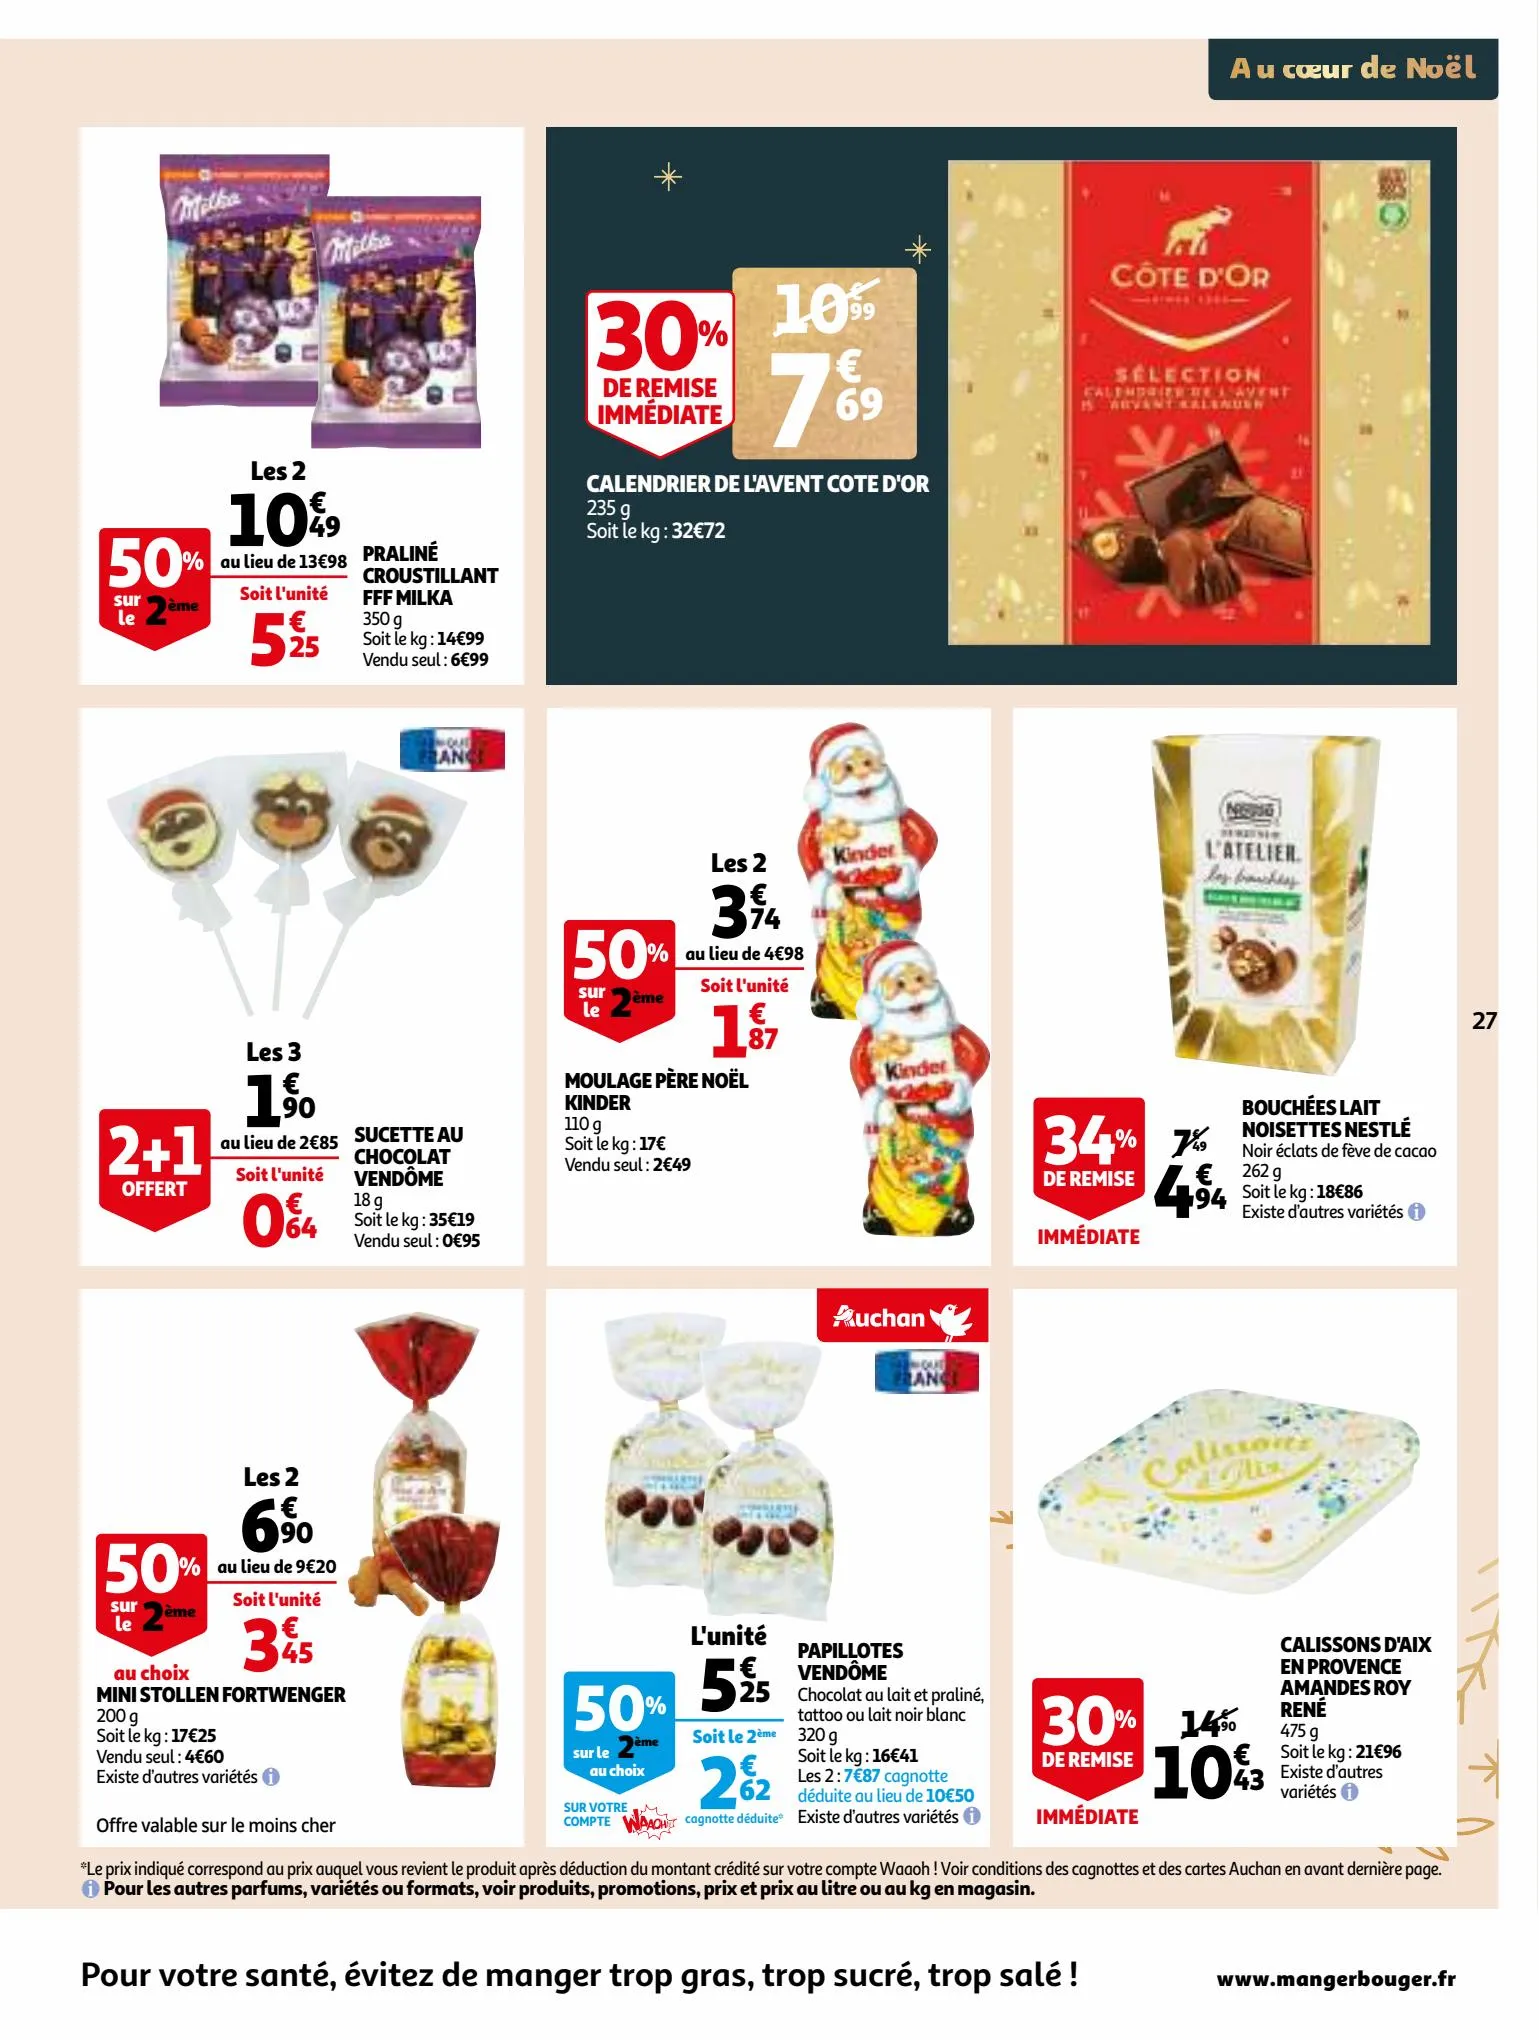 Catalogue 25 jours Auchan, page 00027